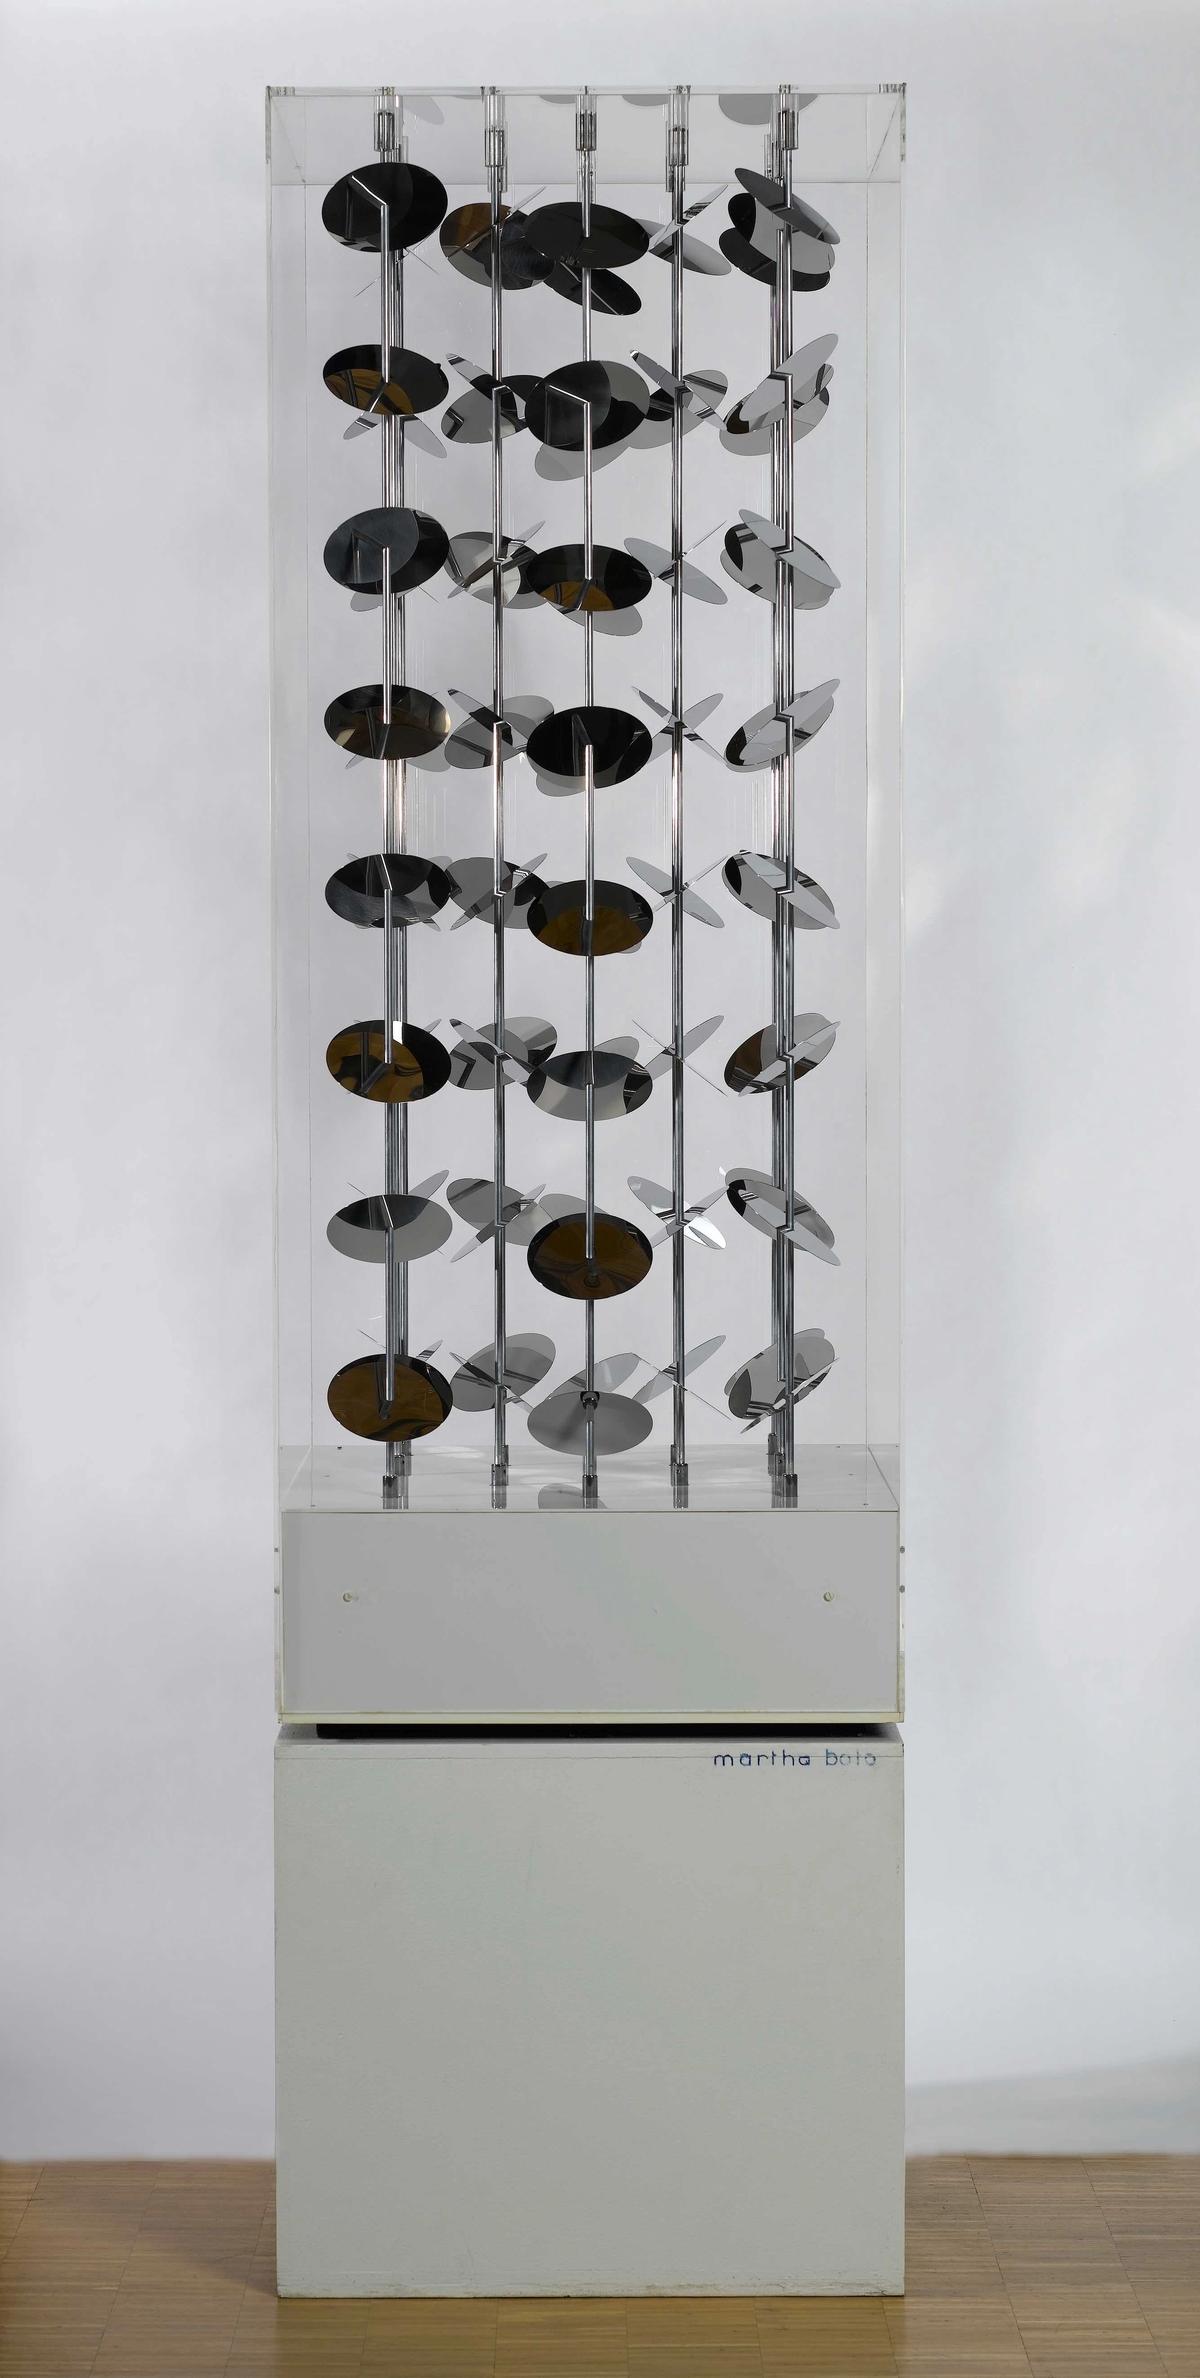 Martha Boto, Essaim de reflets, 1965, acier inoxydable, aluminium, plexiglas, moteurs. Collection Centre Pompidou, Paris, Musée national d’art moderne - Centre de création industrielle. © Adagp, Paris.